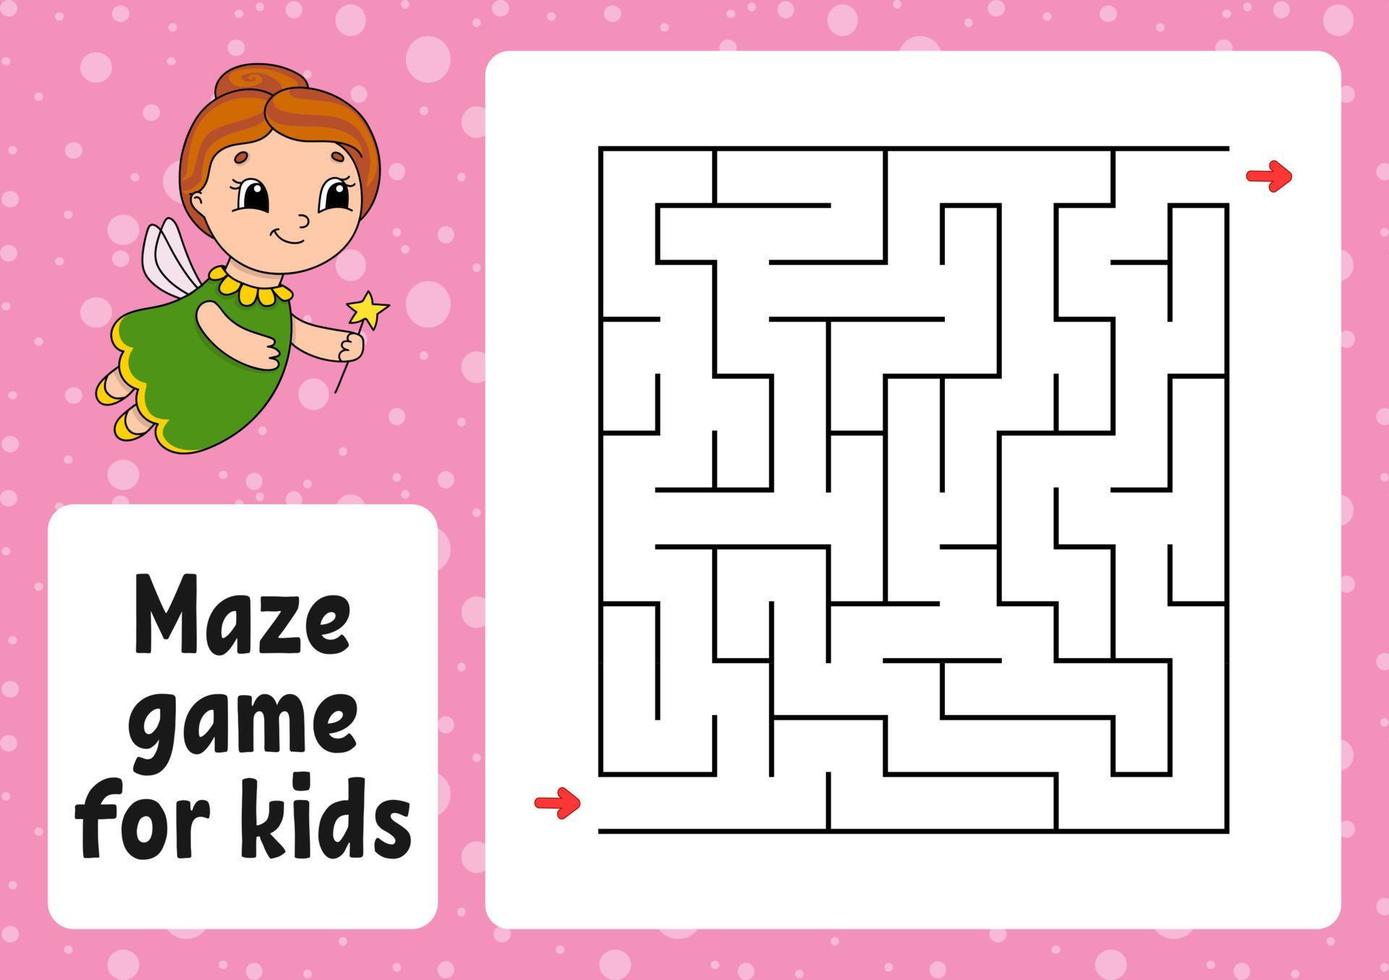 Jogo De Quebra-cabeça Lógico Com Labirinto Para Crianças E Adultos